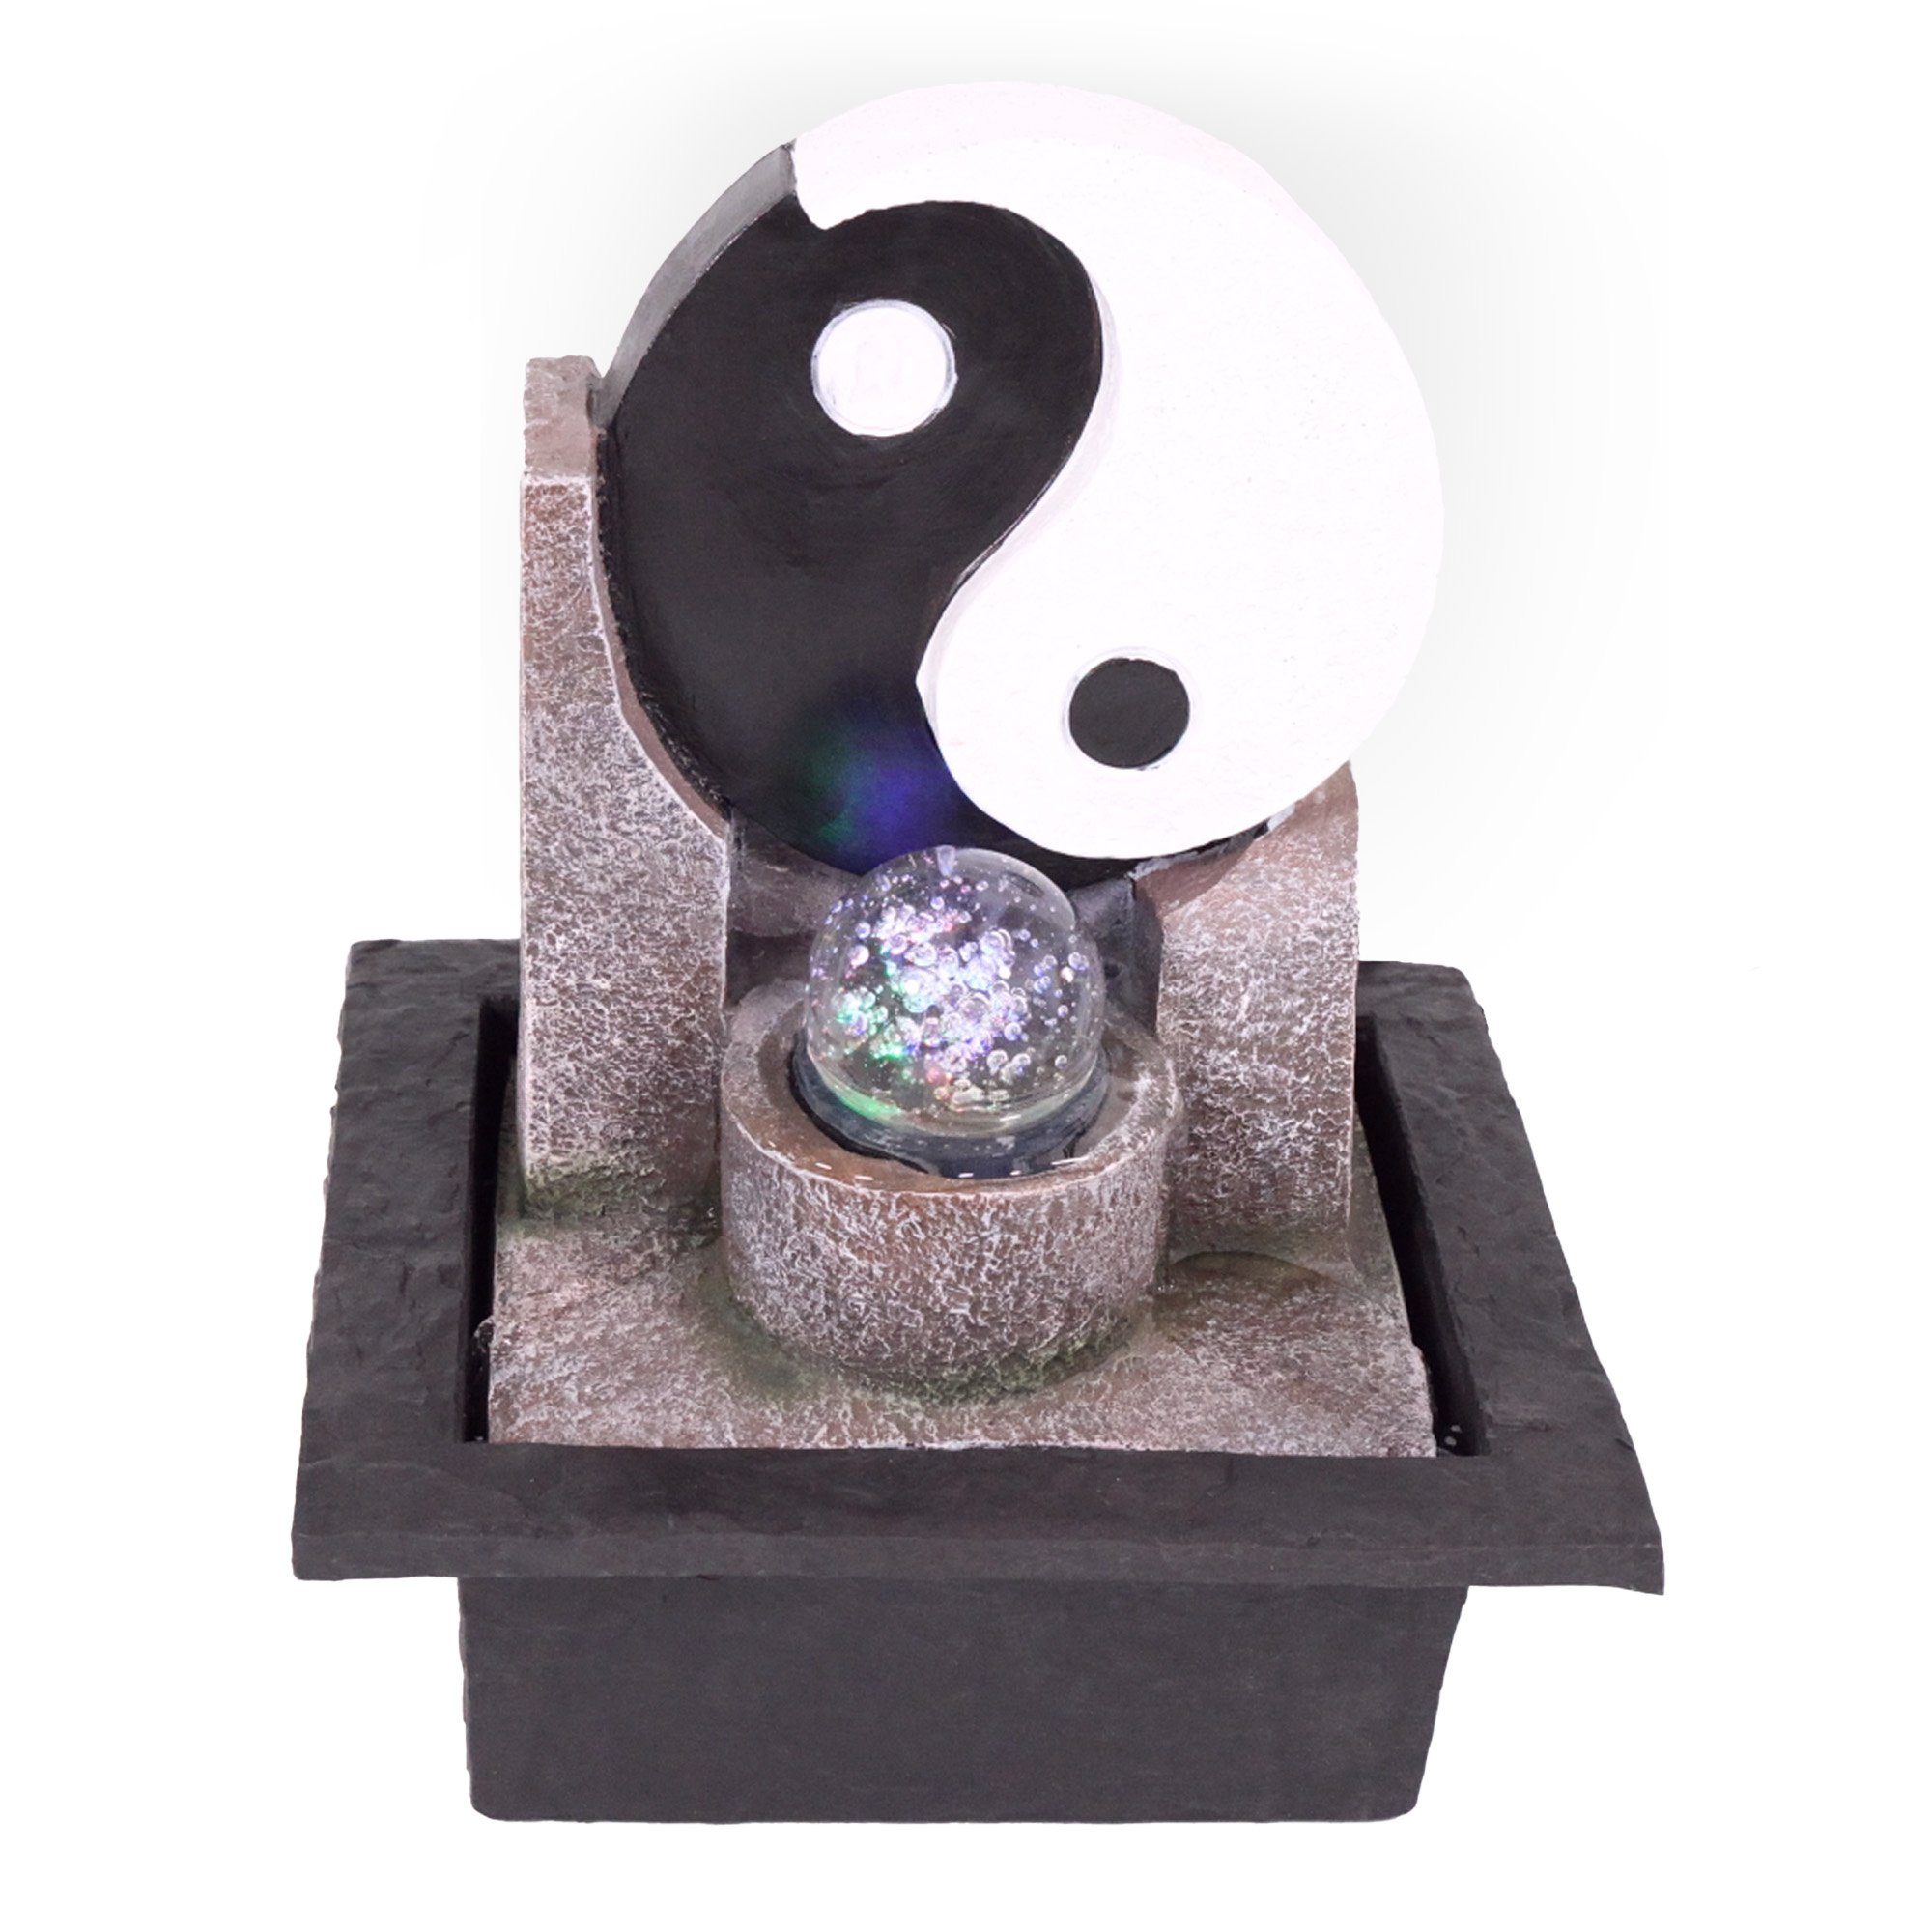 NATIV Zimmerbrunnen Motiv-Tischbrunnen mit Pumpe und Beleuchtung, LED-Beleuchtung Yin Yang